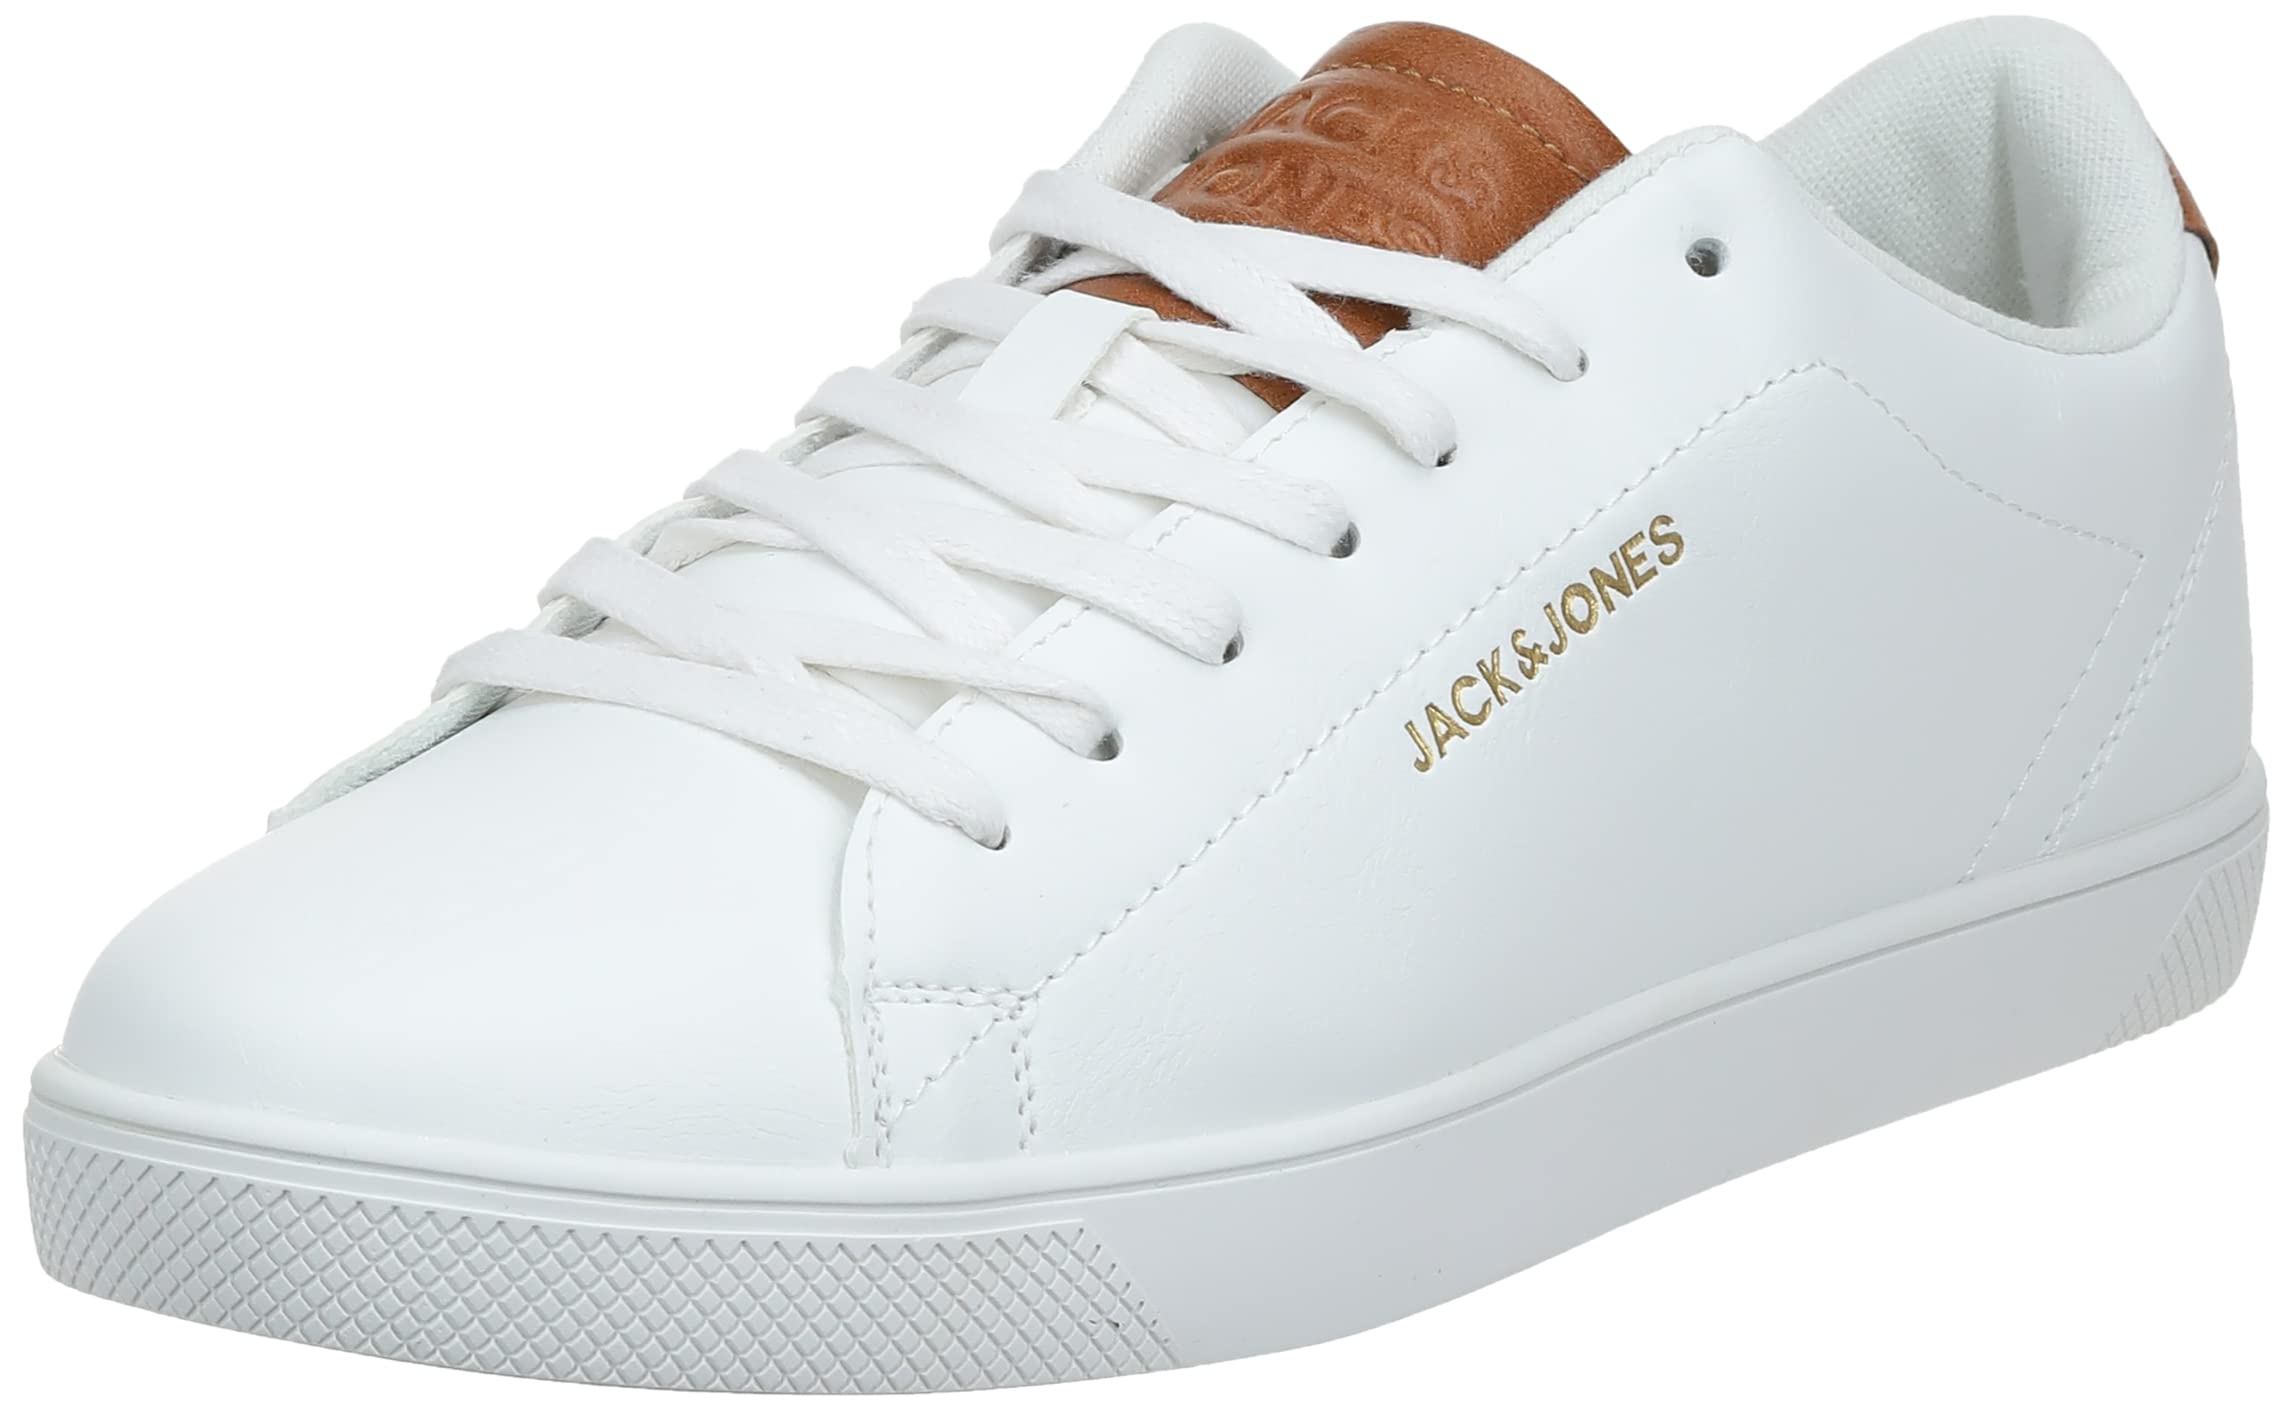 Jack & Jones Herren Jfwboss Pu Sneaker, White, 44 EU